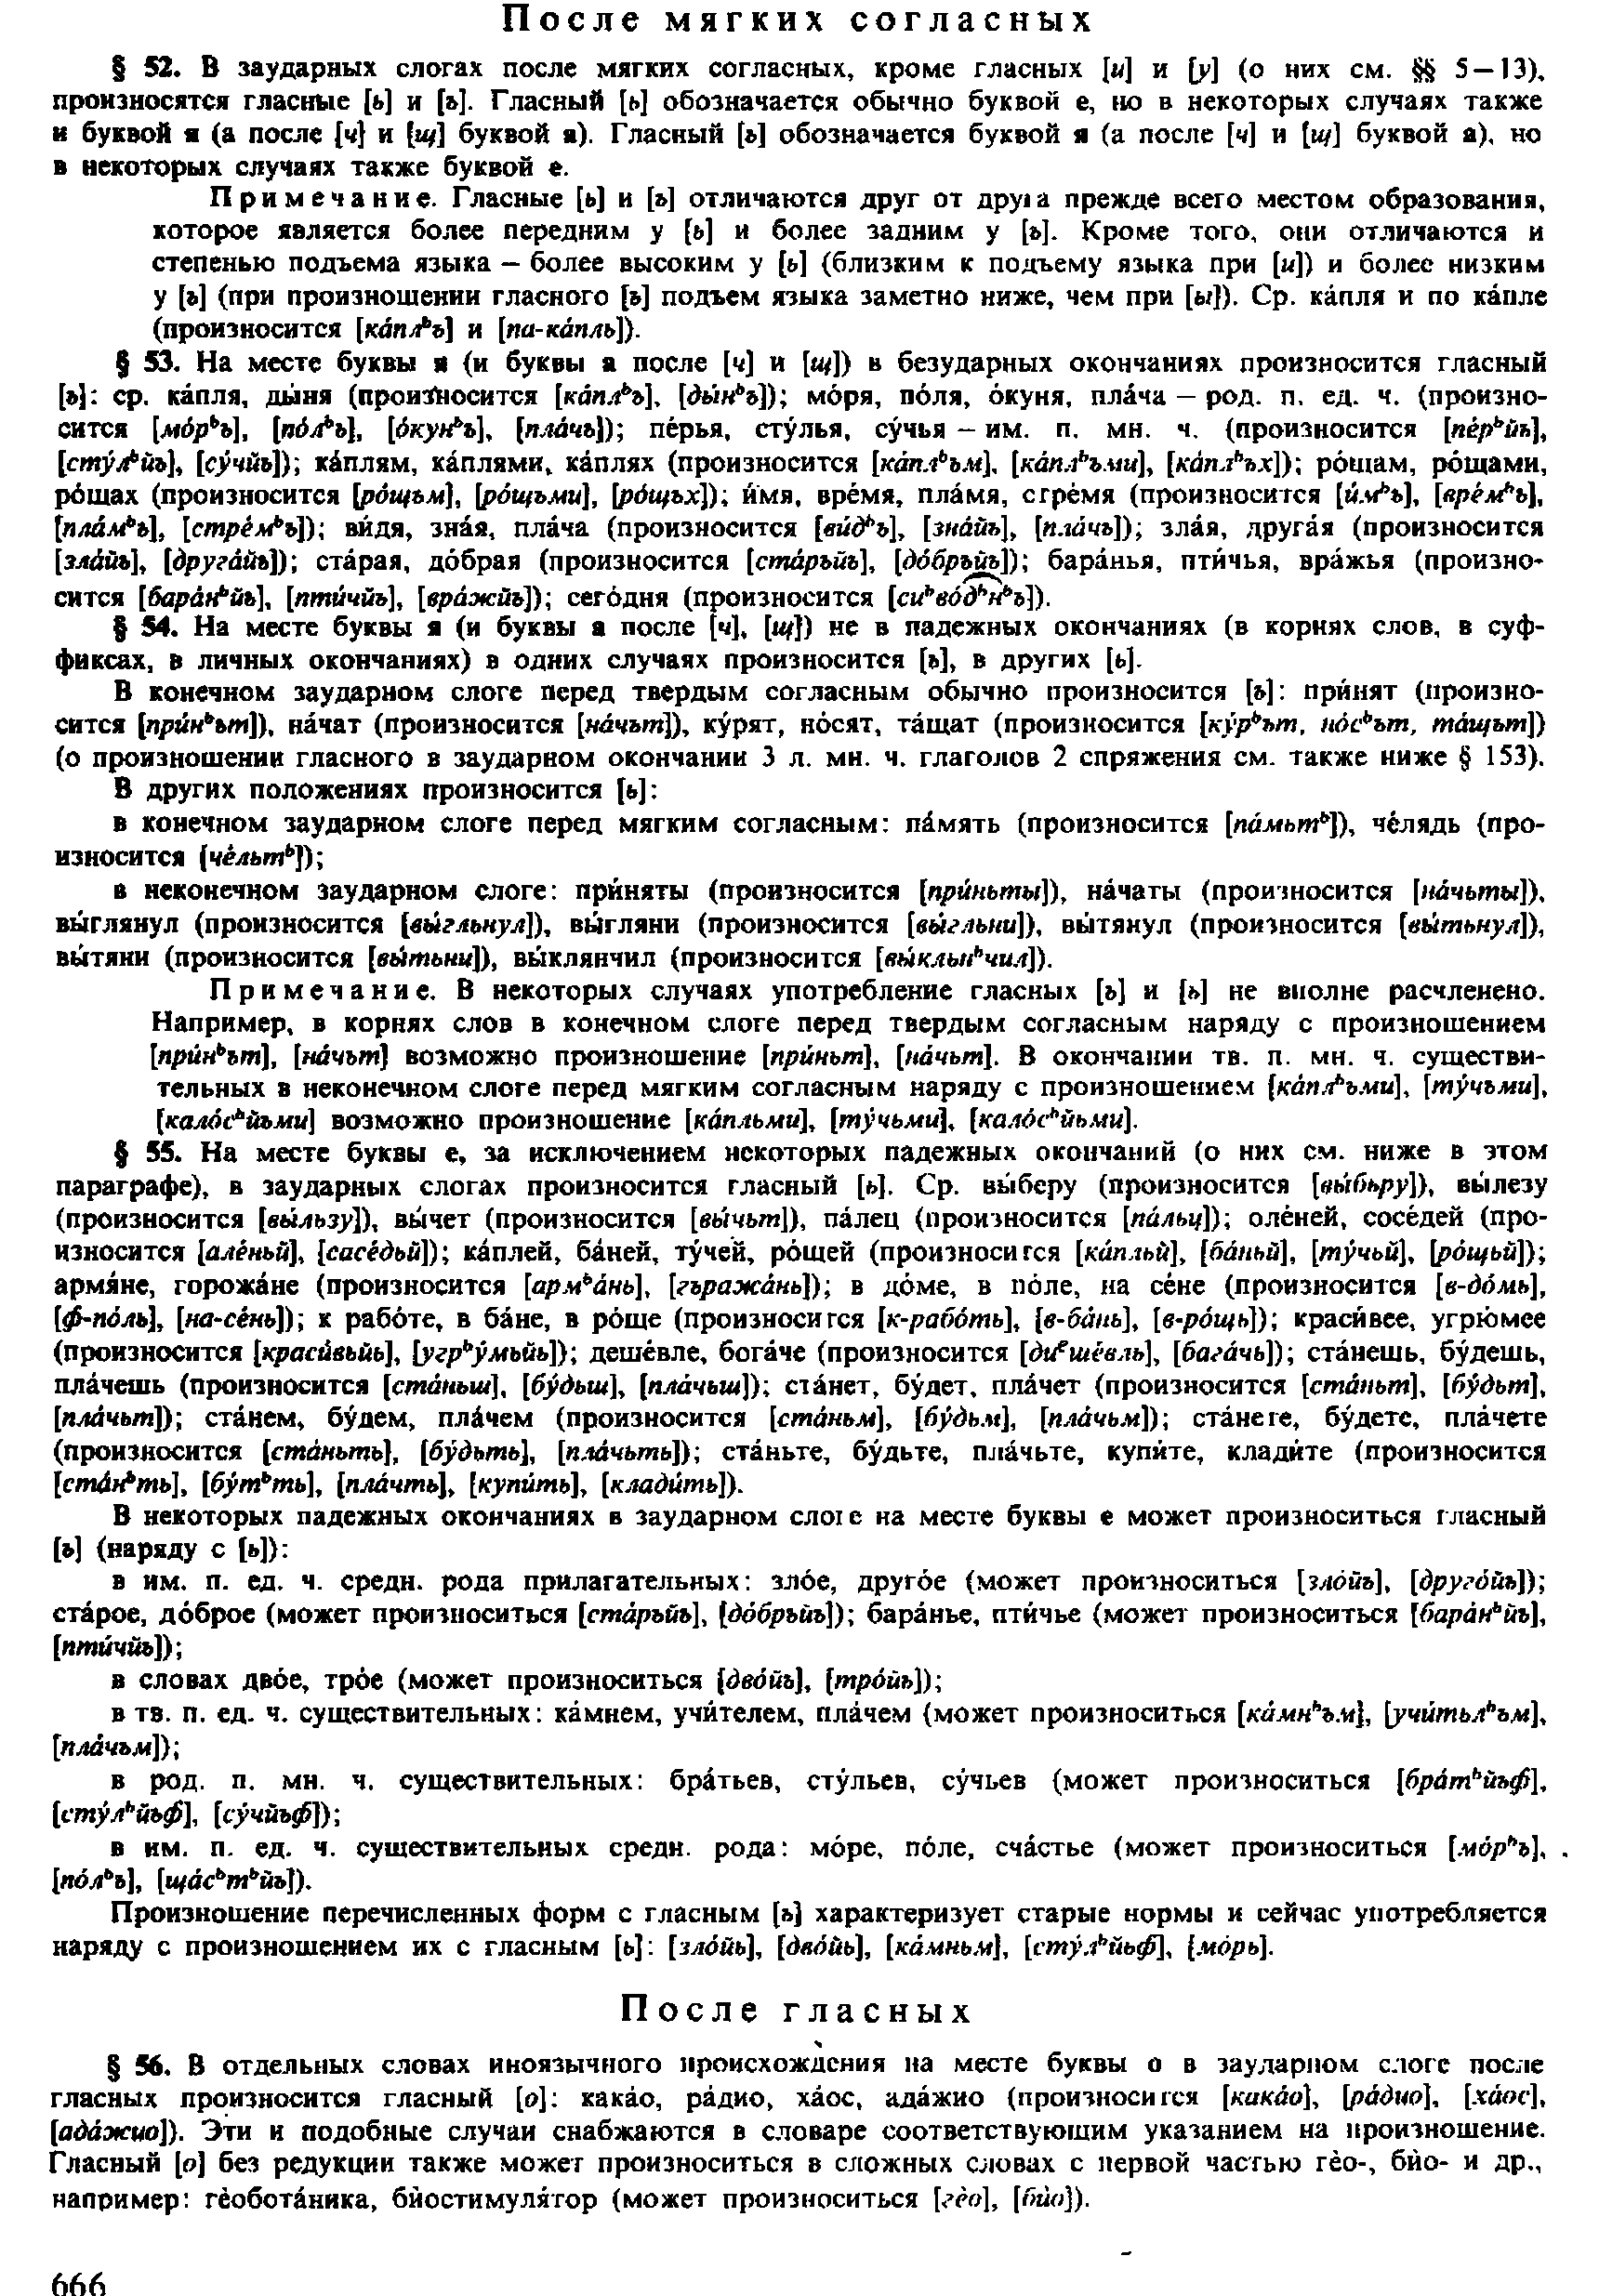 Фотокопия pdf / скан страницы 664 орфоэпического словаря под редакцией Аванесова (4 издание, 1988 год)